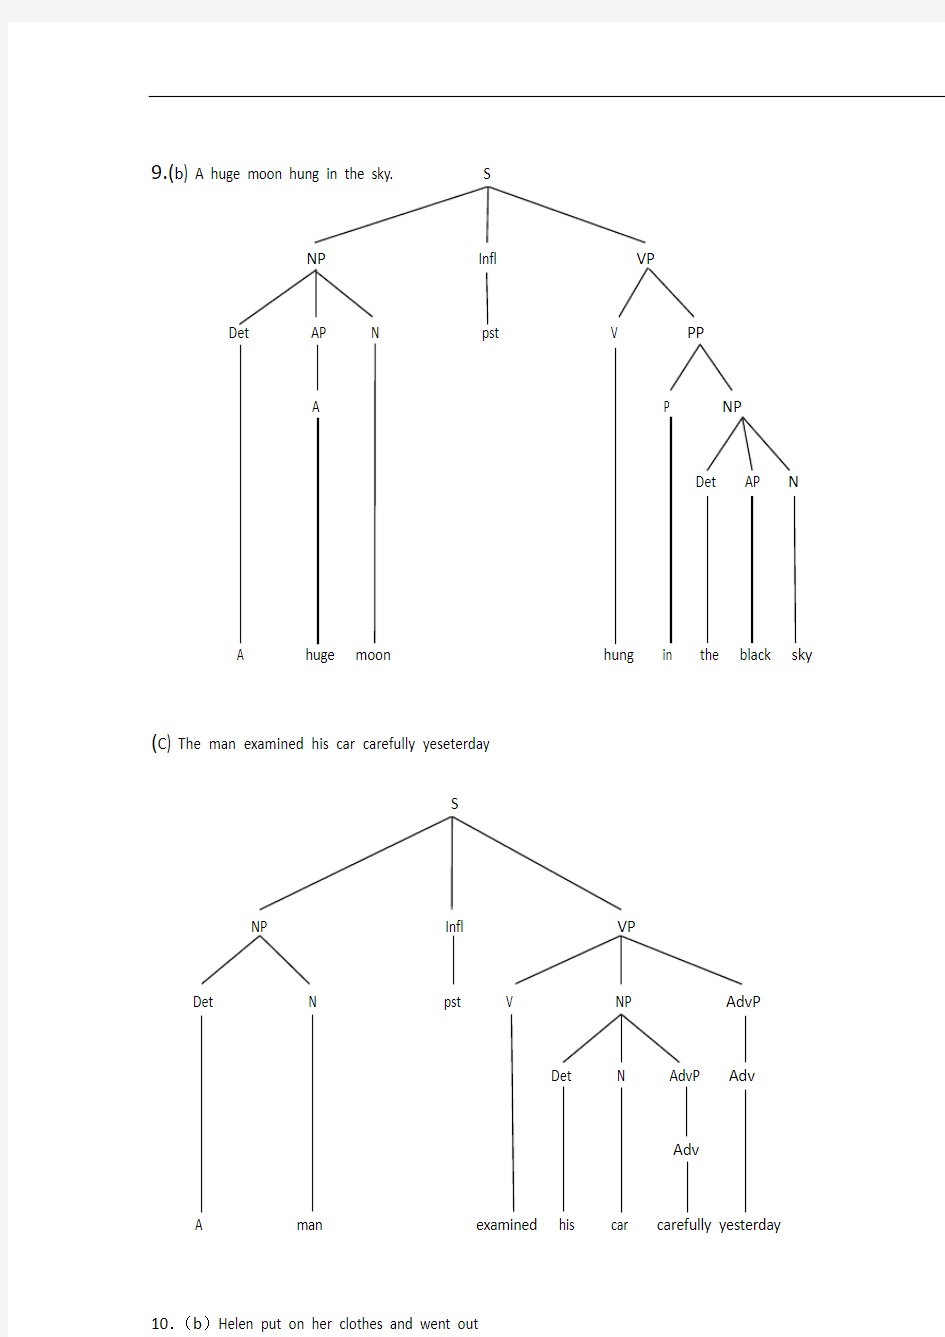 语言学课后习题测验树形图